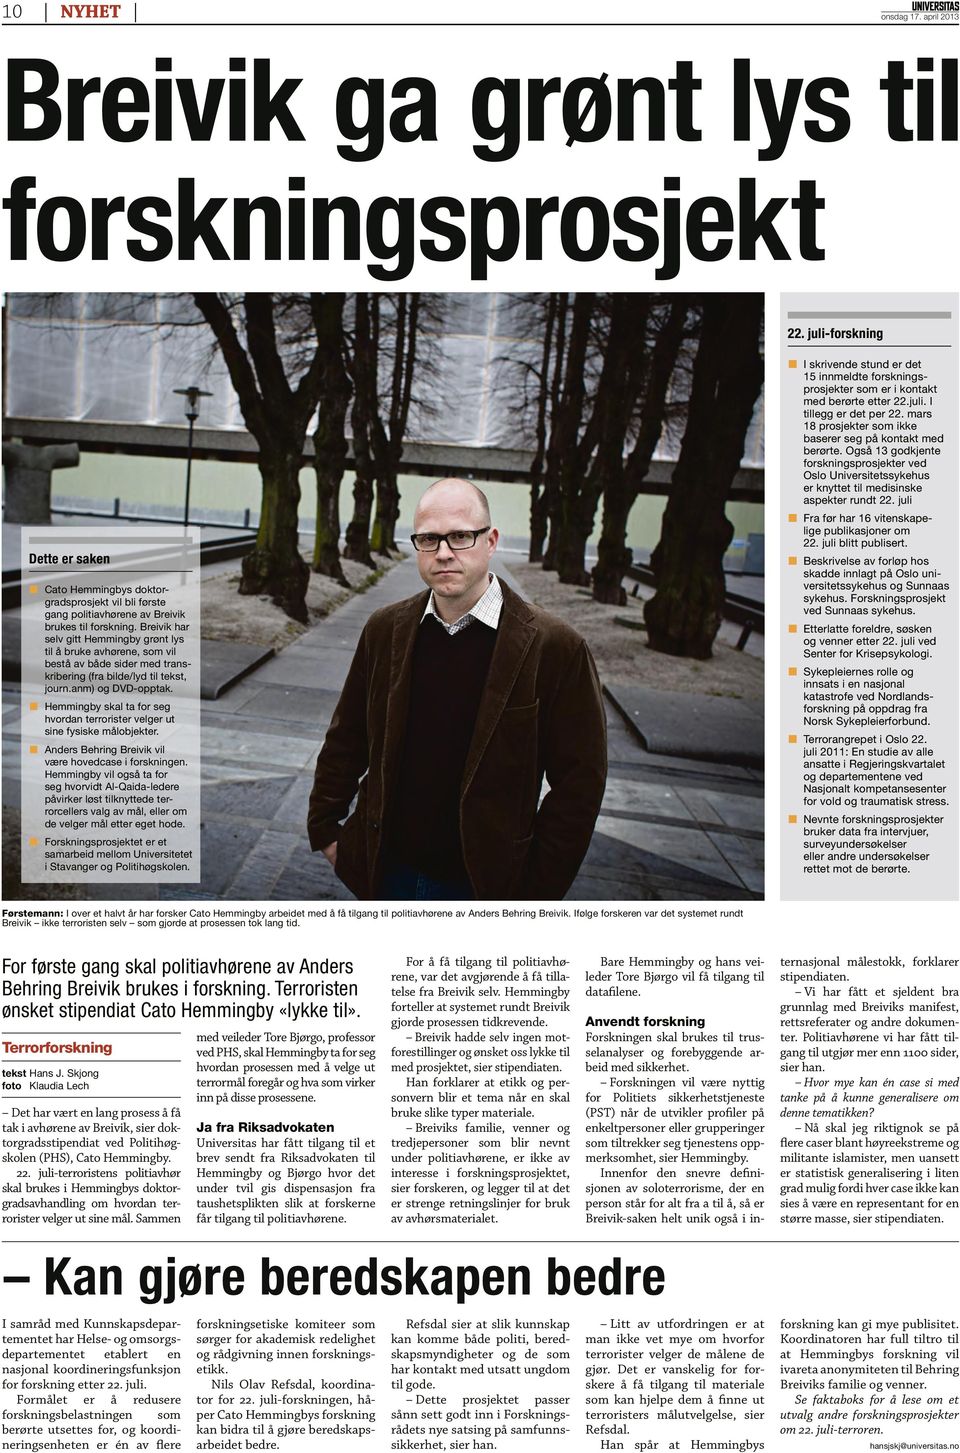 Breivik har selv gitt Hemmingby grønt lys til å bruke avhørene, som vil bestå av både sider med transkribering (fra bilde/lyd til tekst, journ.anm) og DVD-opptak.